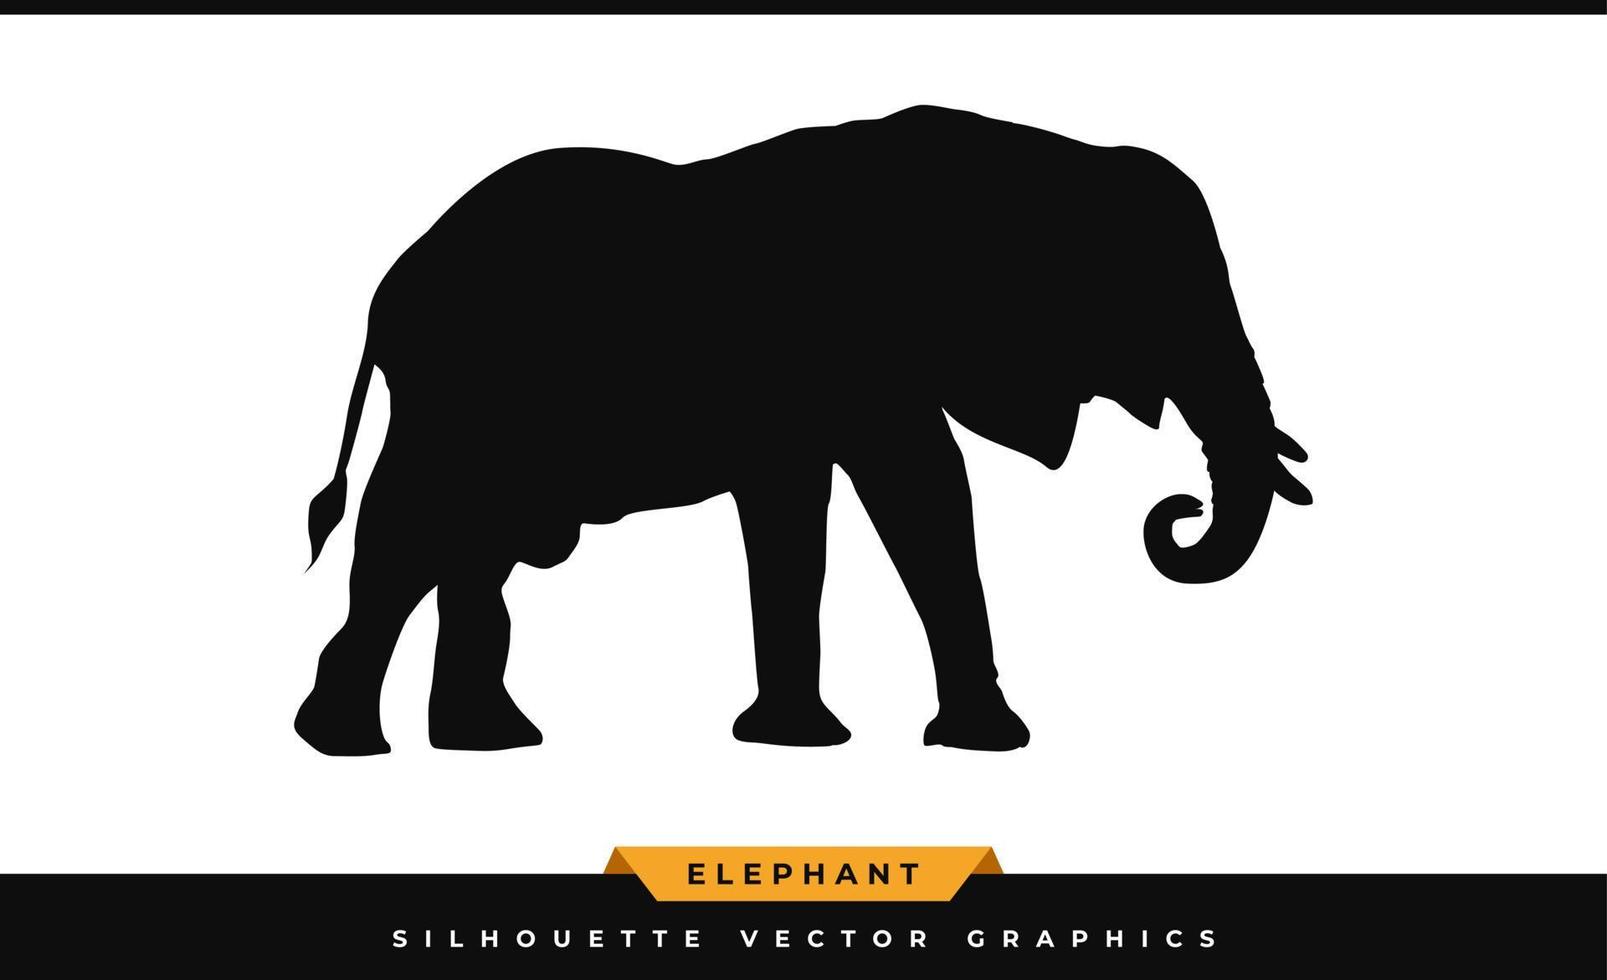 sagoma di elefante. silhouette elefante, isolato su sfondo bianco. icona dell'elefante nero, grande vettore di illustrazione dei mammiferi della fauna selvatica, percorso di taglio laser.